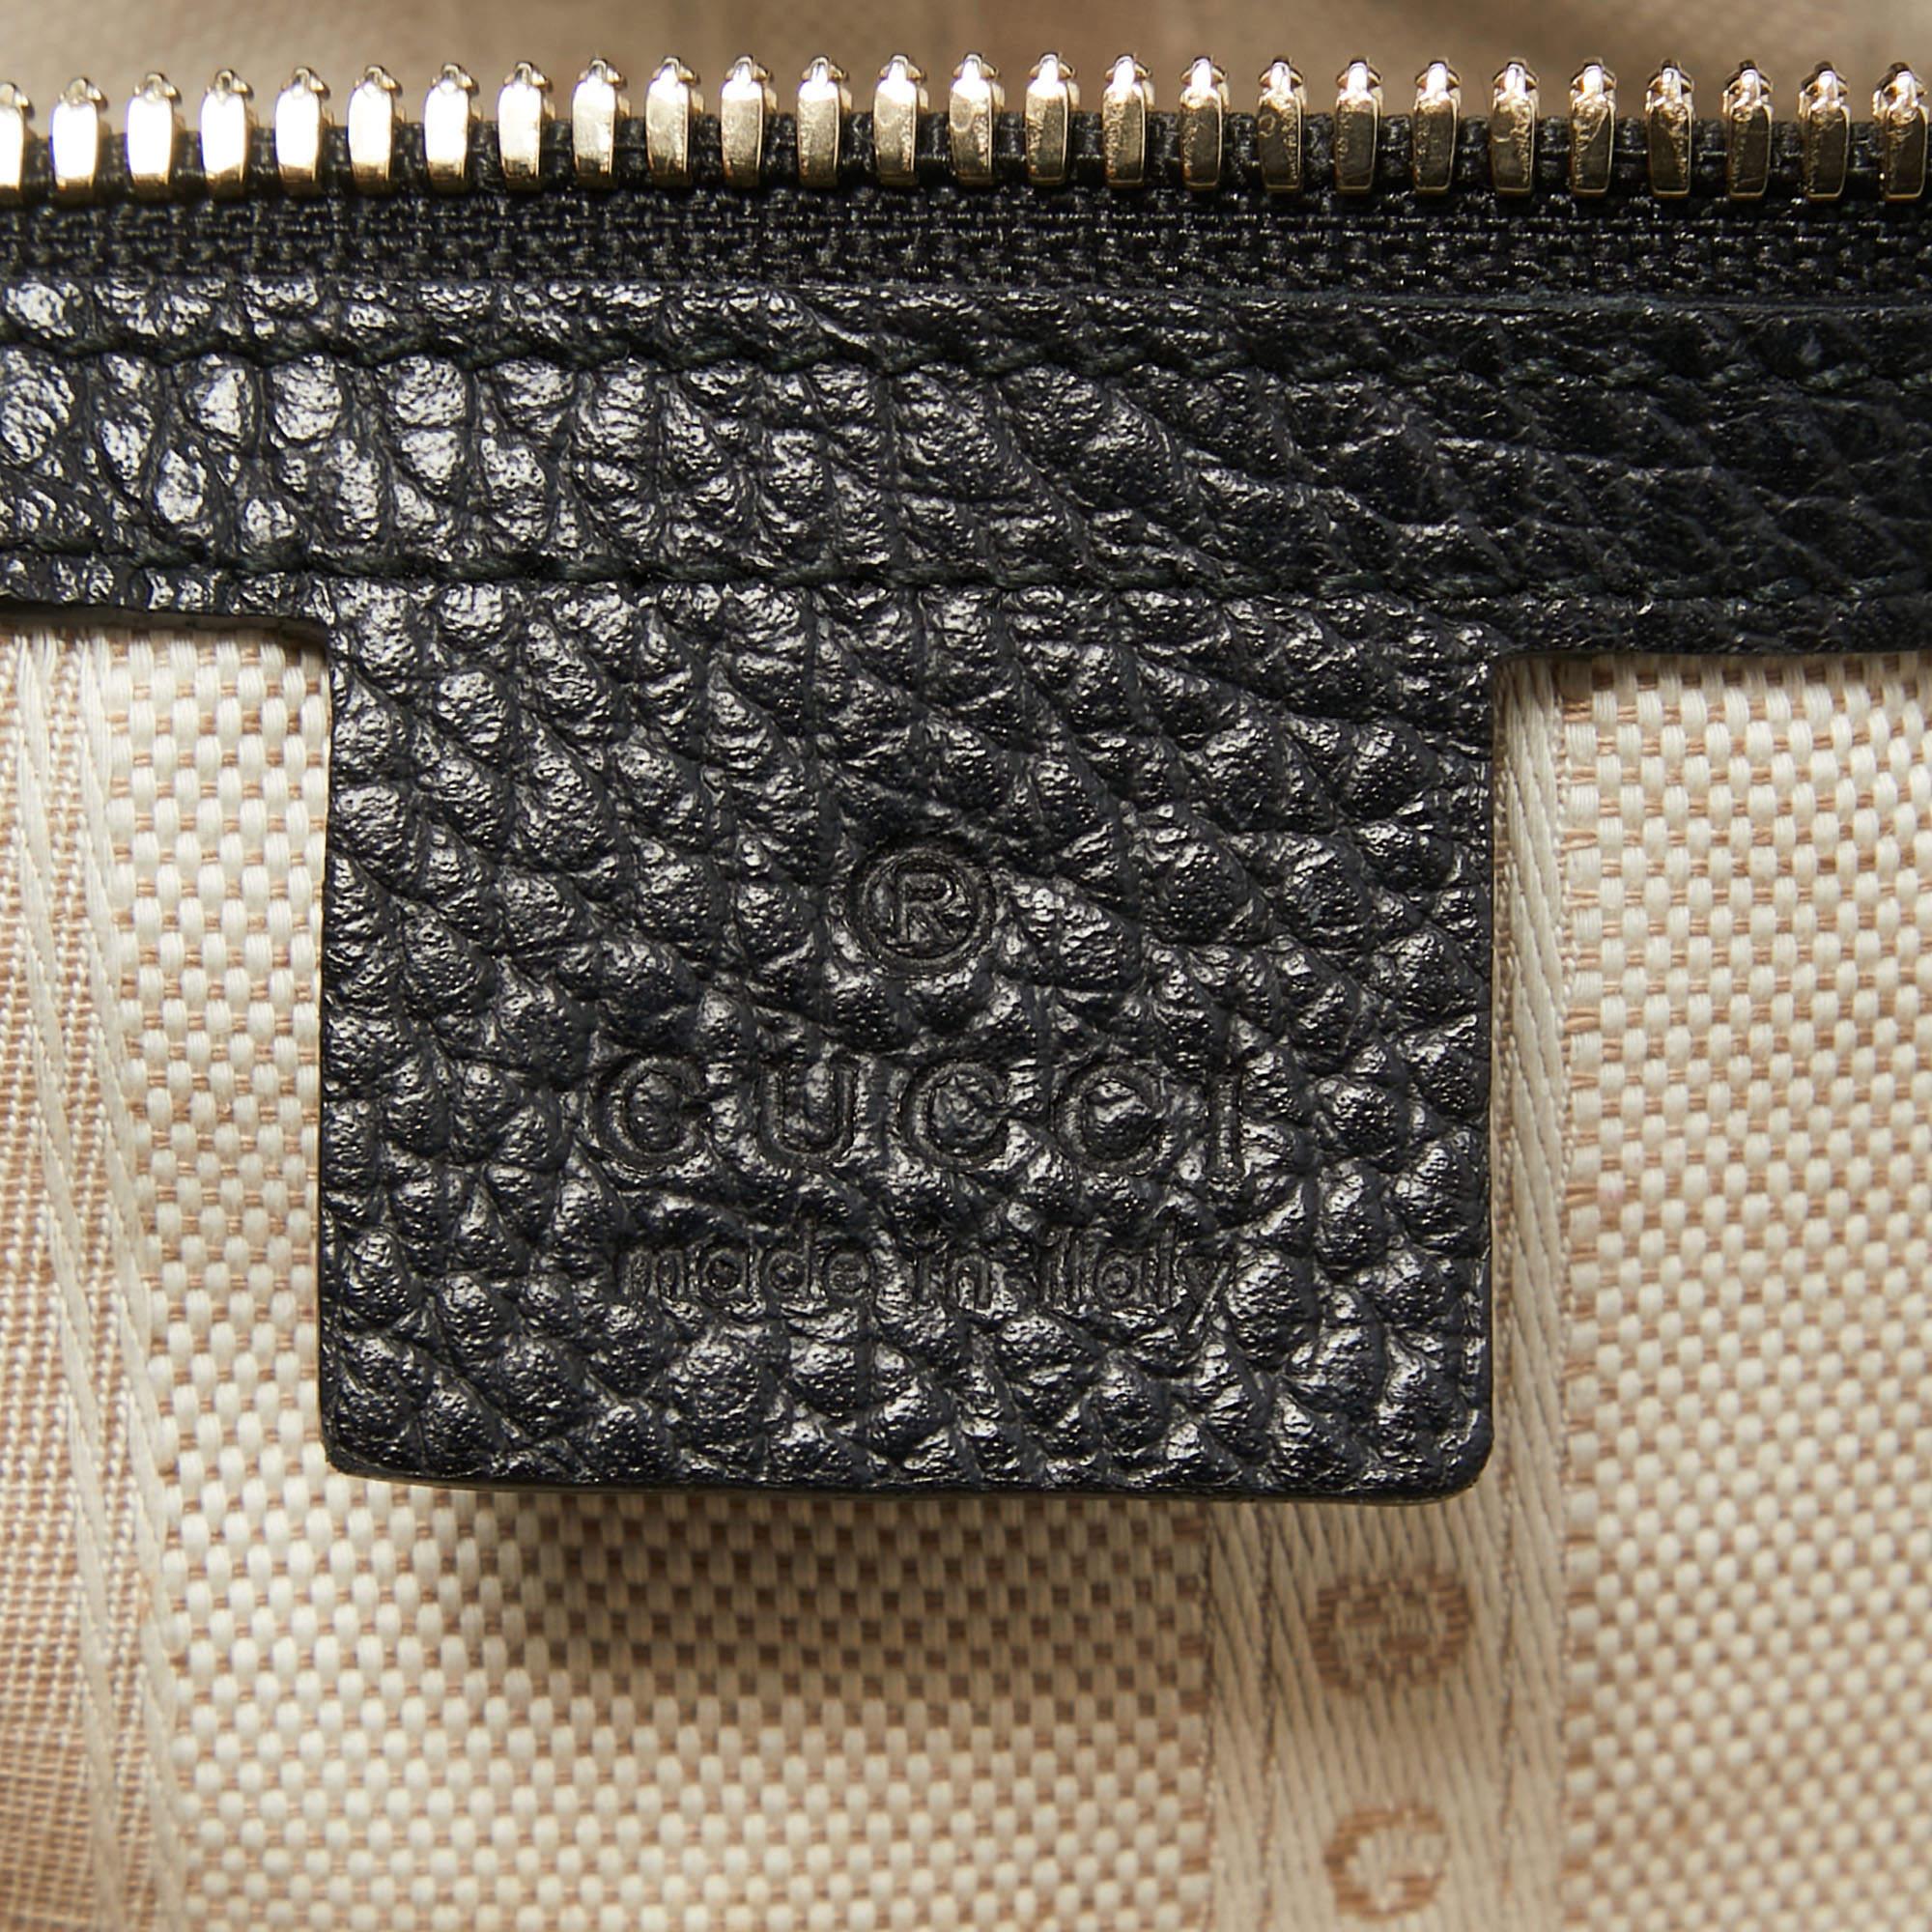 Gucci Black Leather Interlocking G Tote 10